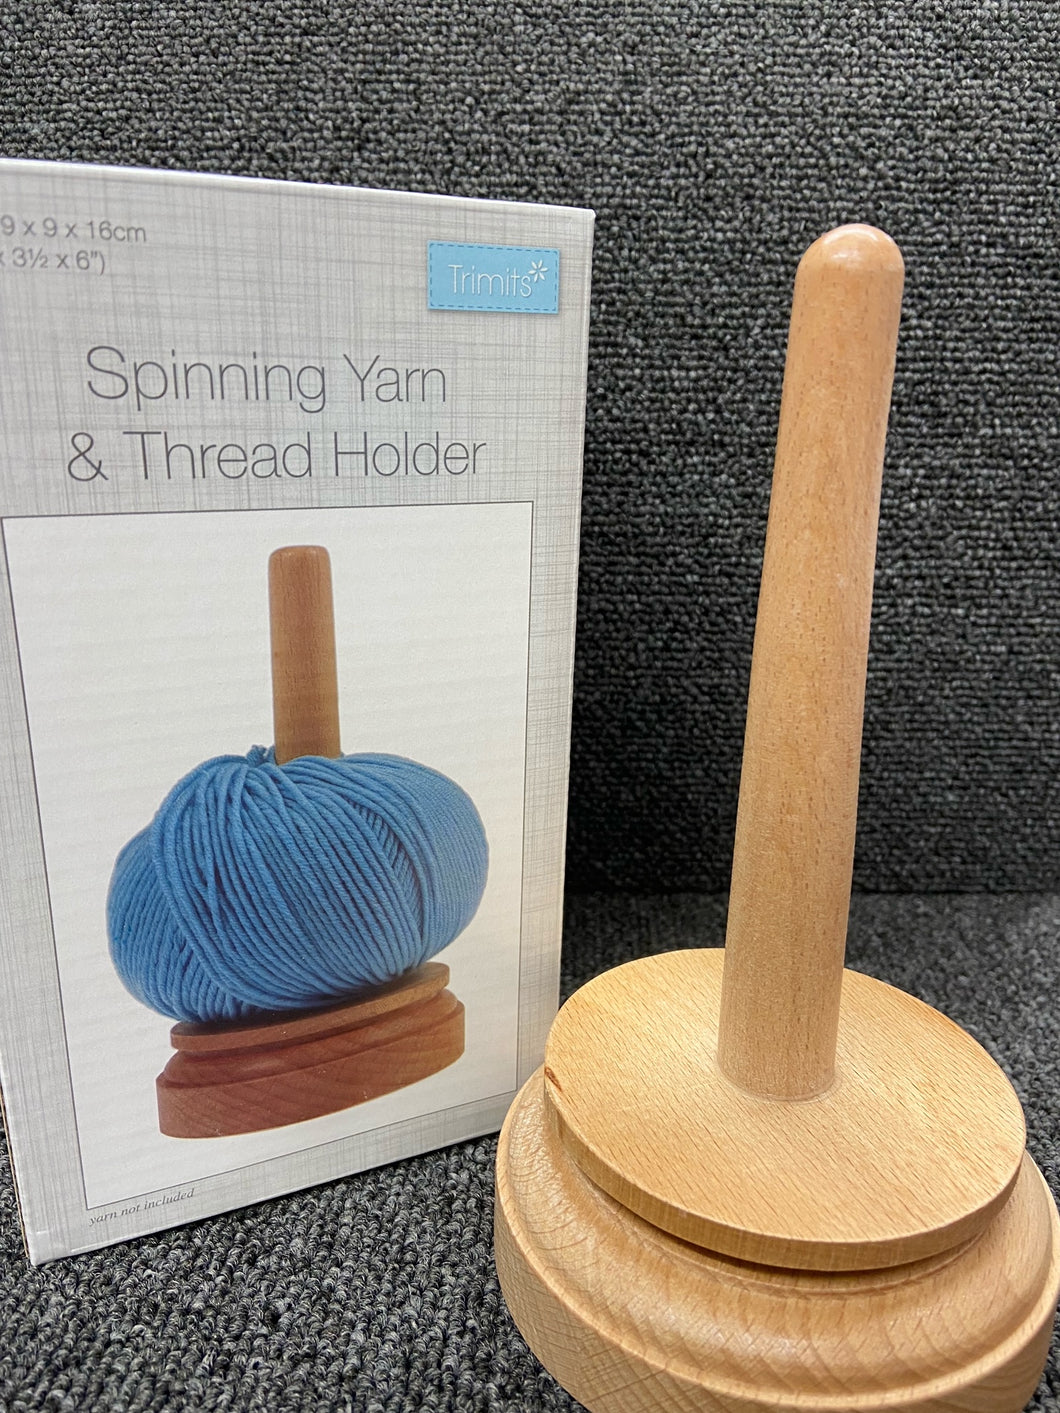 Trimits Spinning Yarn & Thread Holder